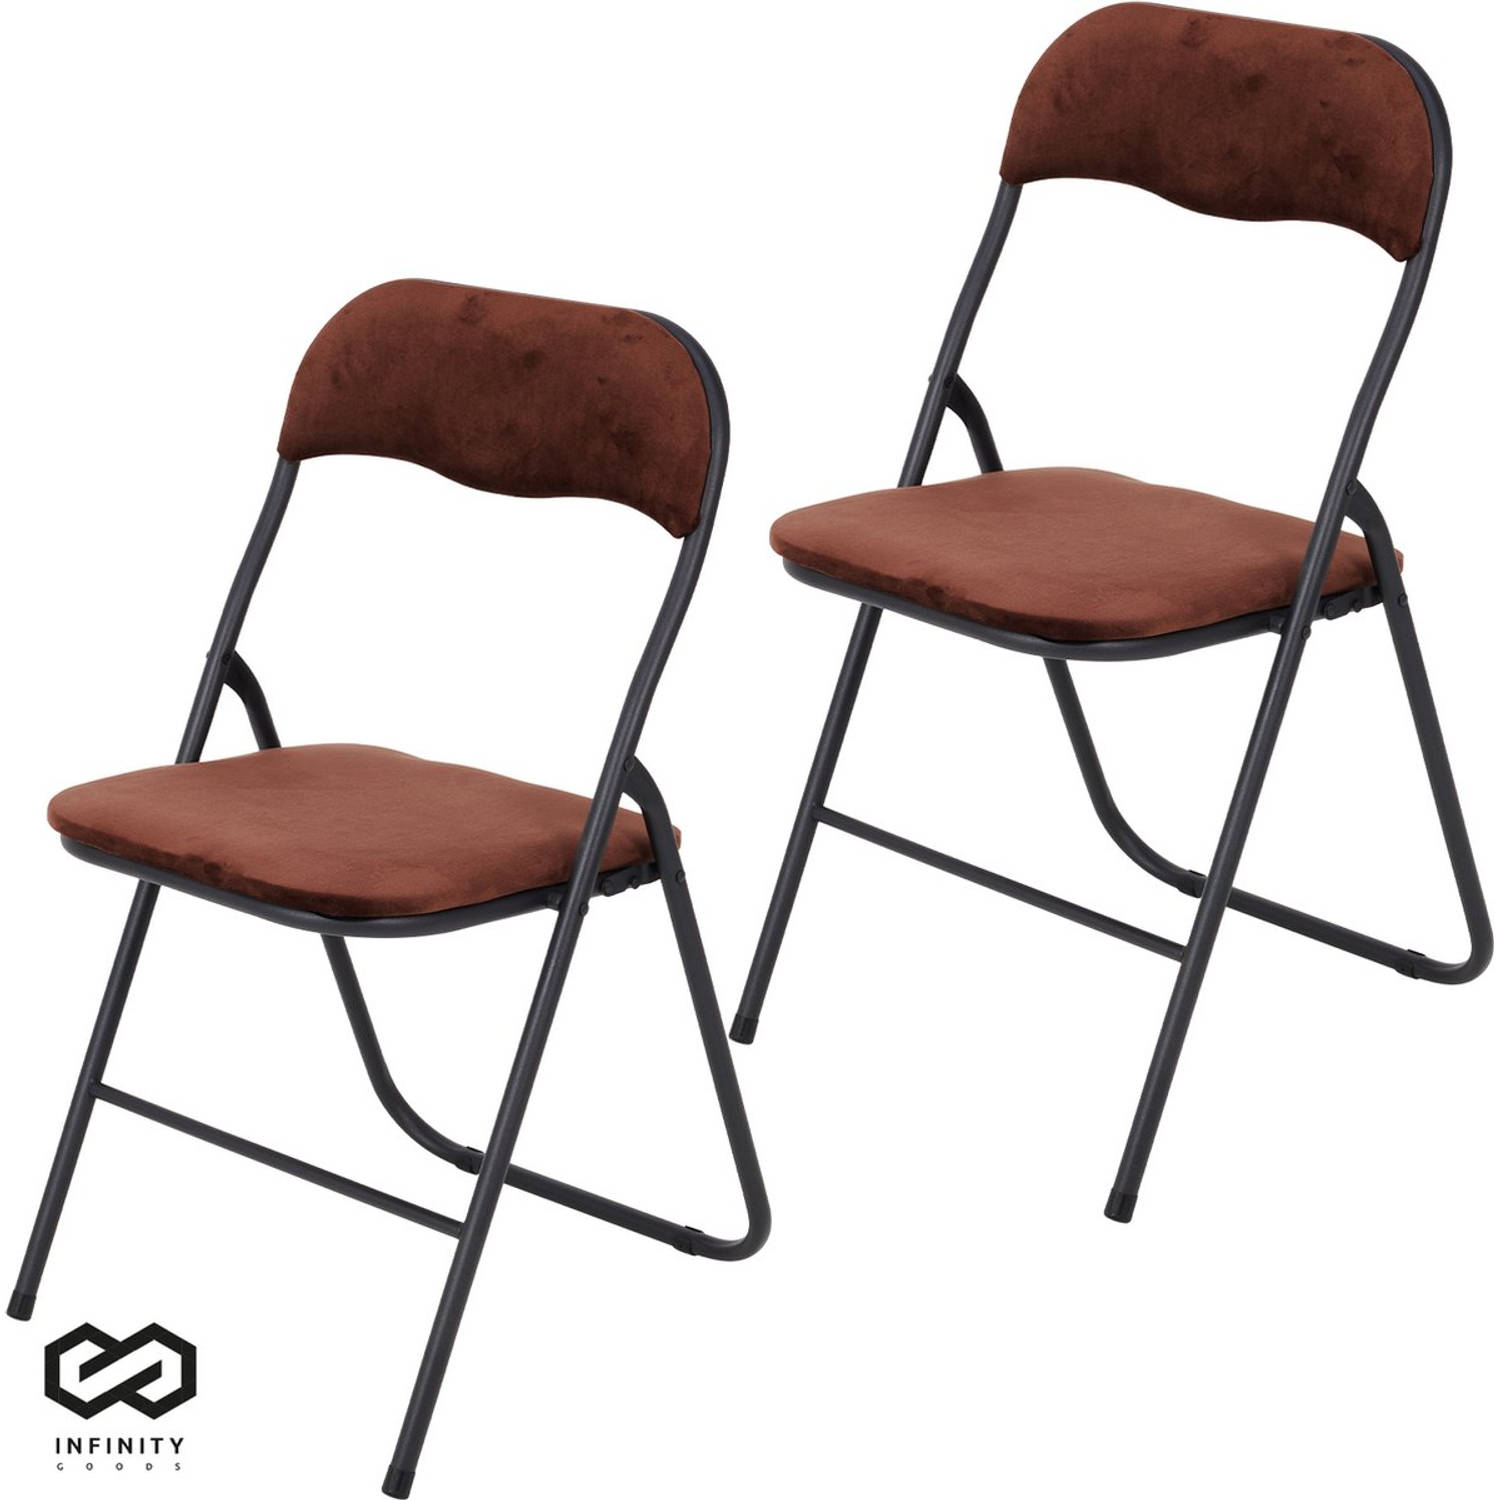 Infinity Goods Klapstoelen - Set van 2 - Vouwstoelen - Fluweel - Eettafelstoelen - Opklapbare Stoelen - 43 x 47 x 80 CM - Stoelen - Bruin